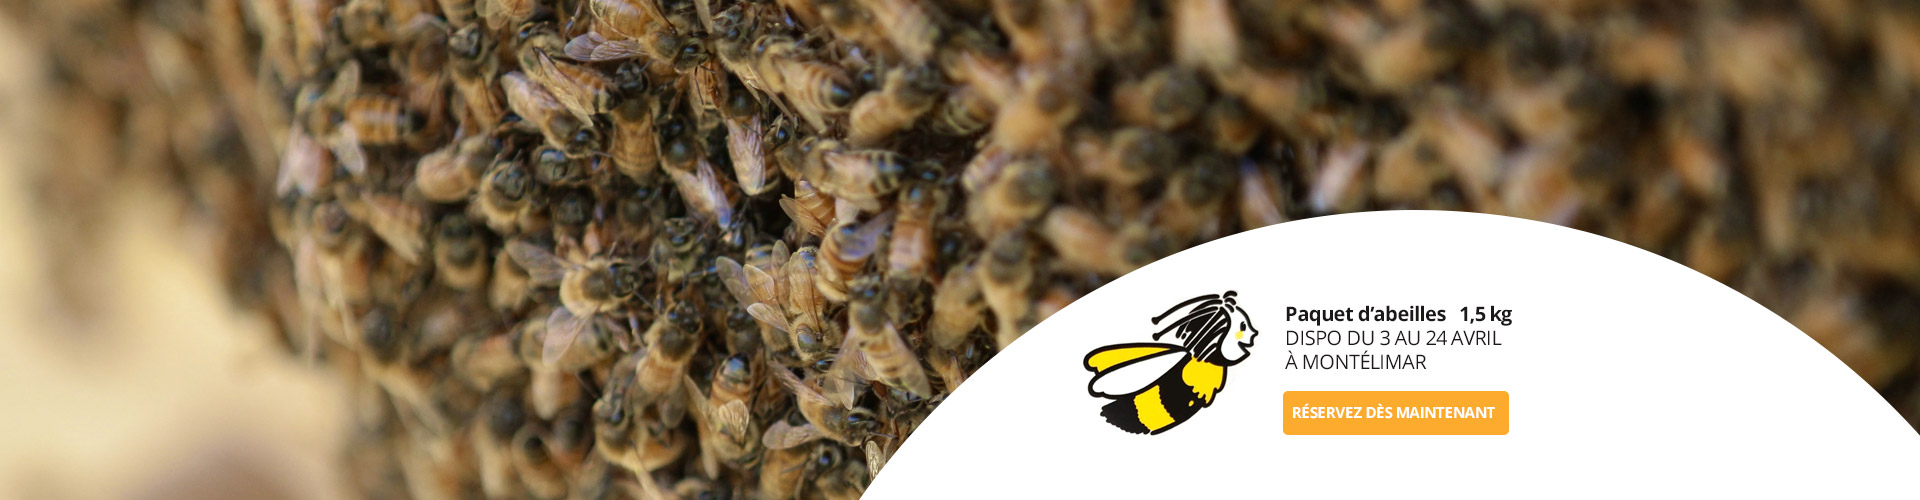 Le Ruchesco : Paquet d'abeilles sans reines